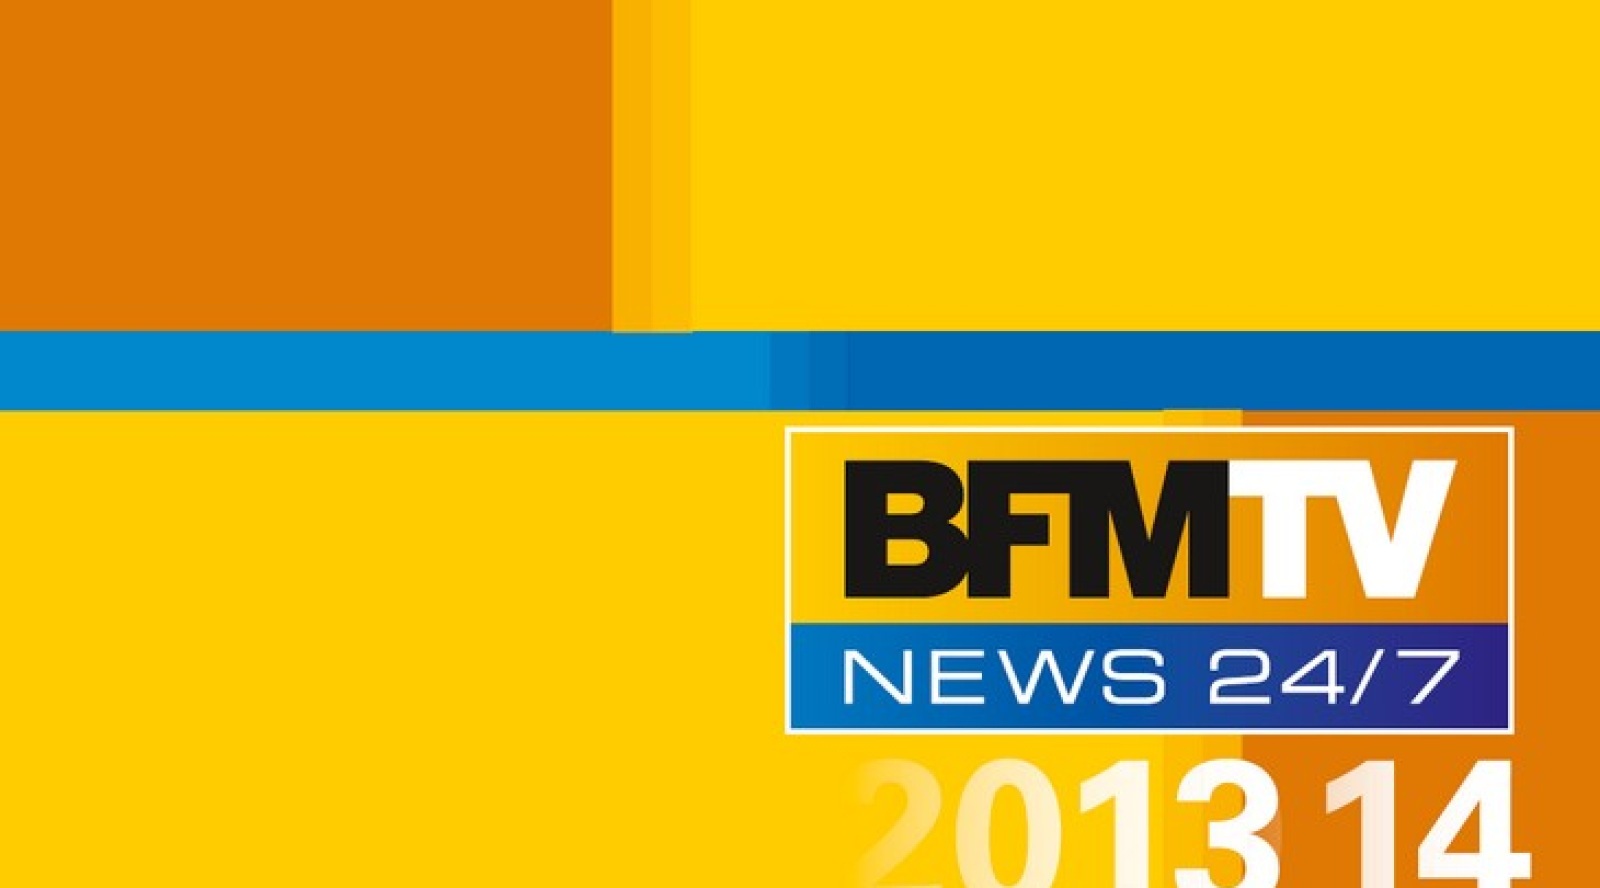 bfm-tv-et-bfm-business-ne-changent-pas-mais-avancent-image-cb-news